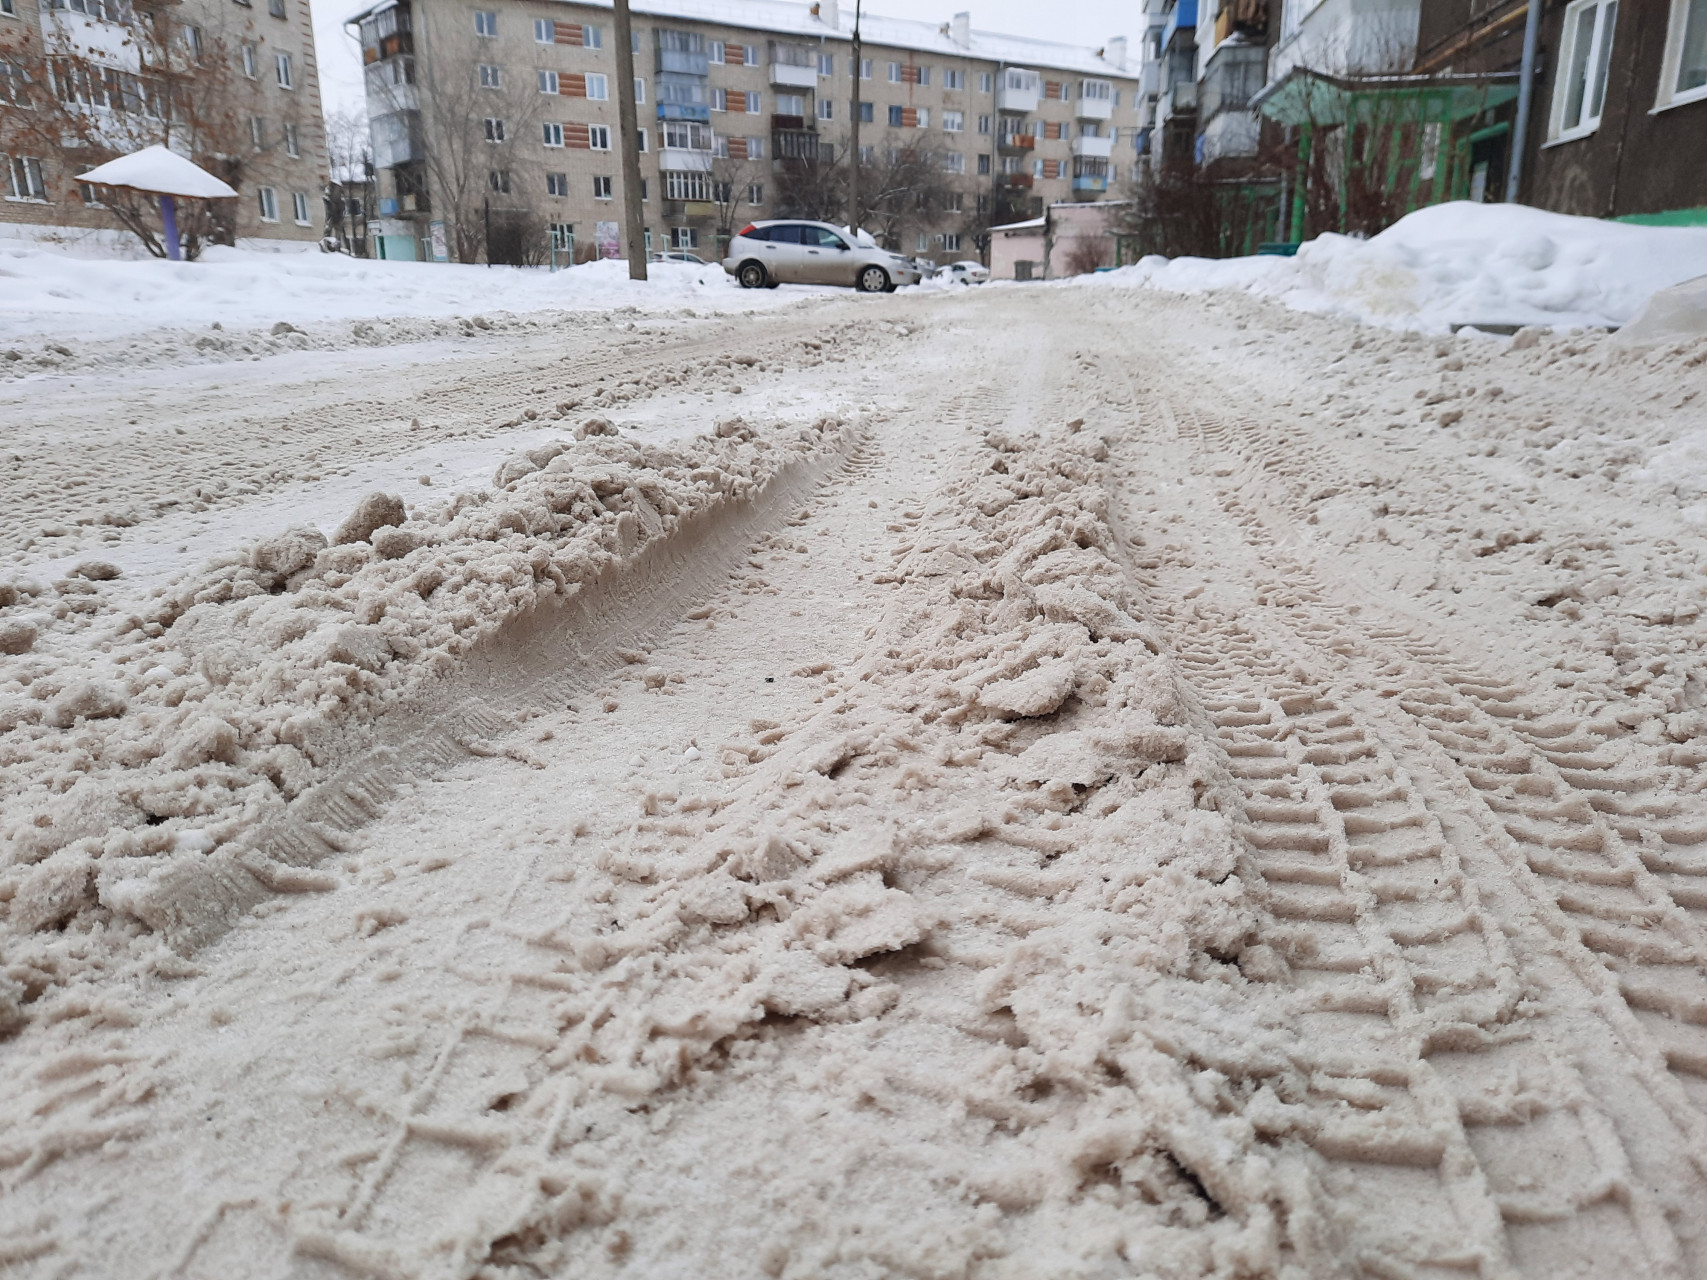 Во дворе у дома 12 по ул. Терешковой можно тренировать мышцы ног, преодолевая полосы снежных препятствий. Неужели так всю зиму придется - ругается народ.